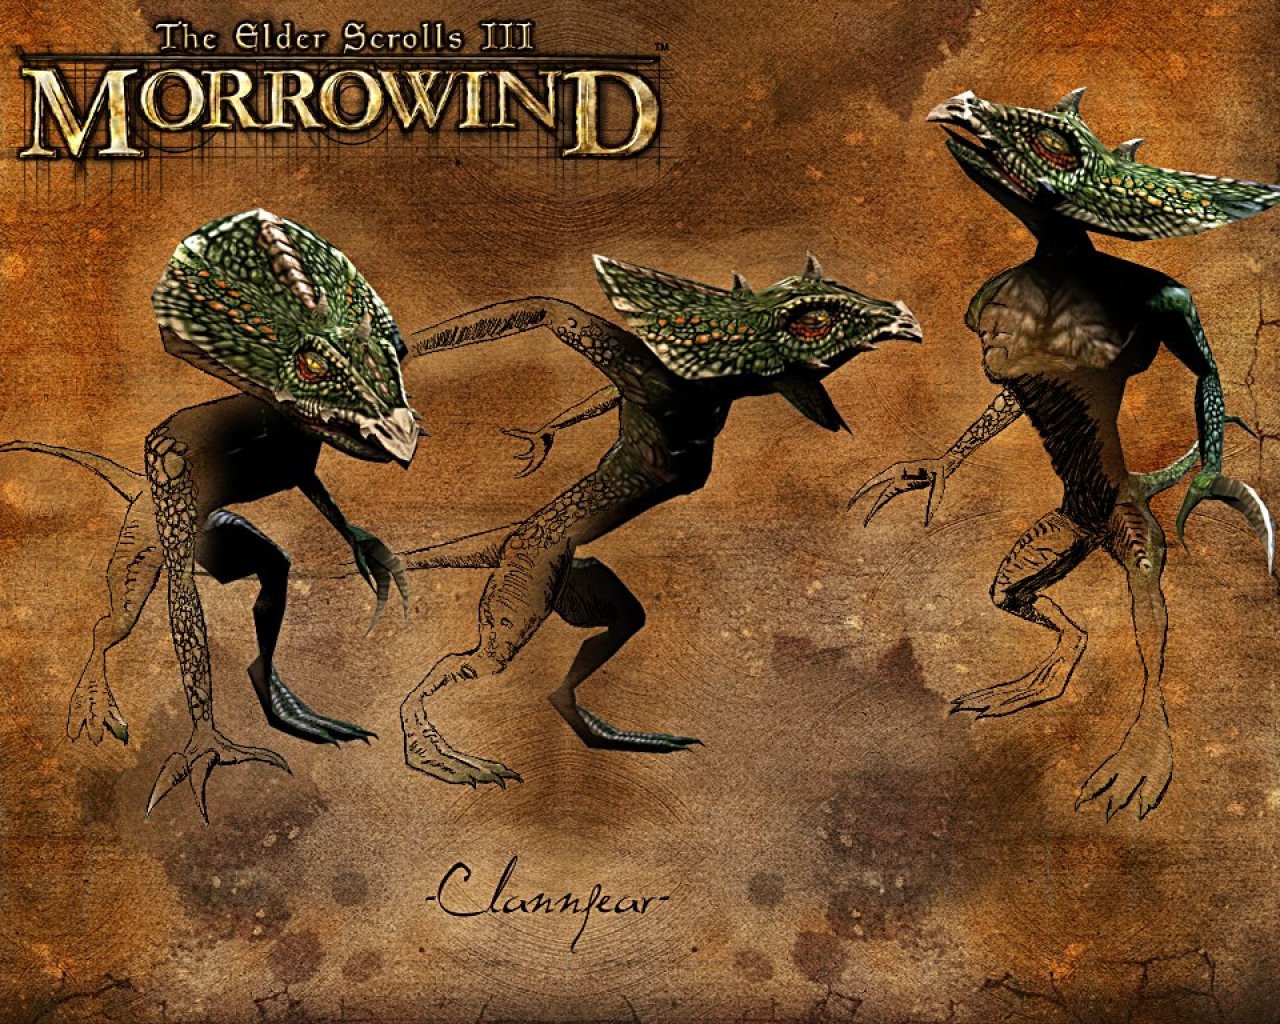 Wallpaper The Elder Scrolls III: Morrowind "Clannfear"